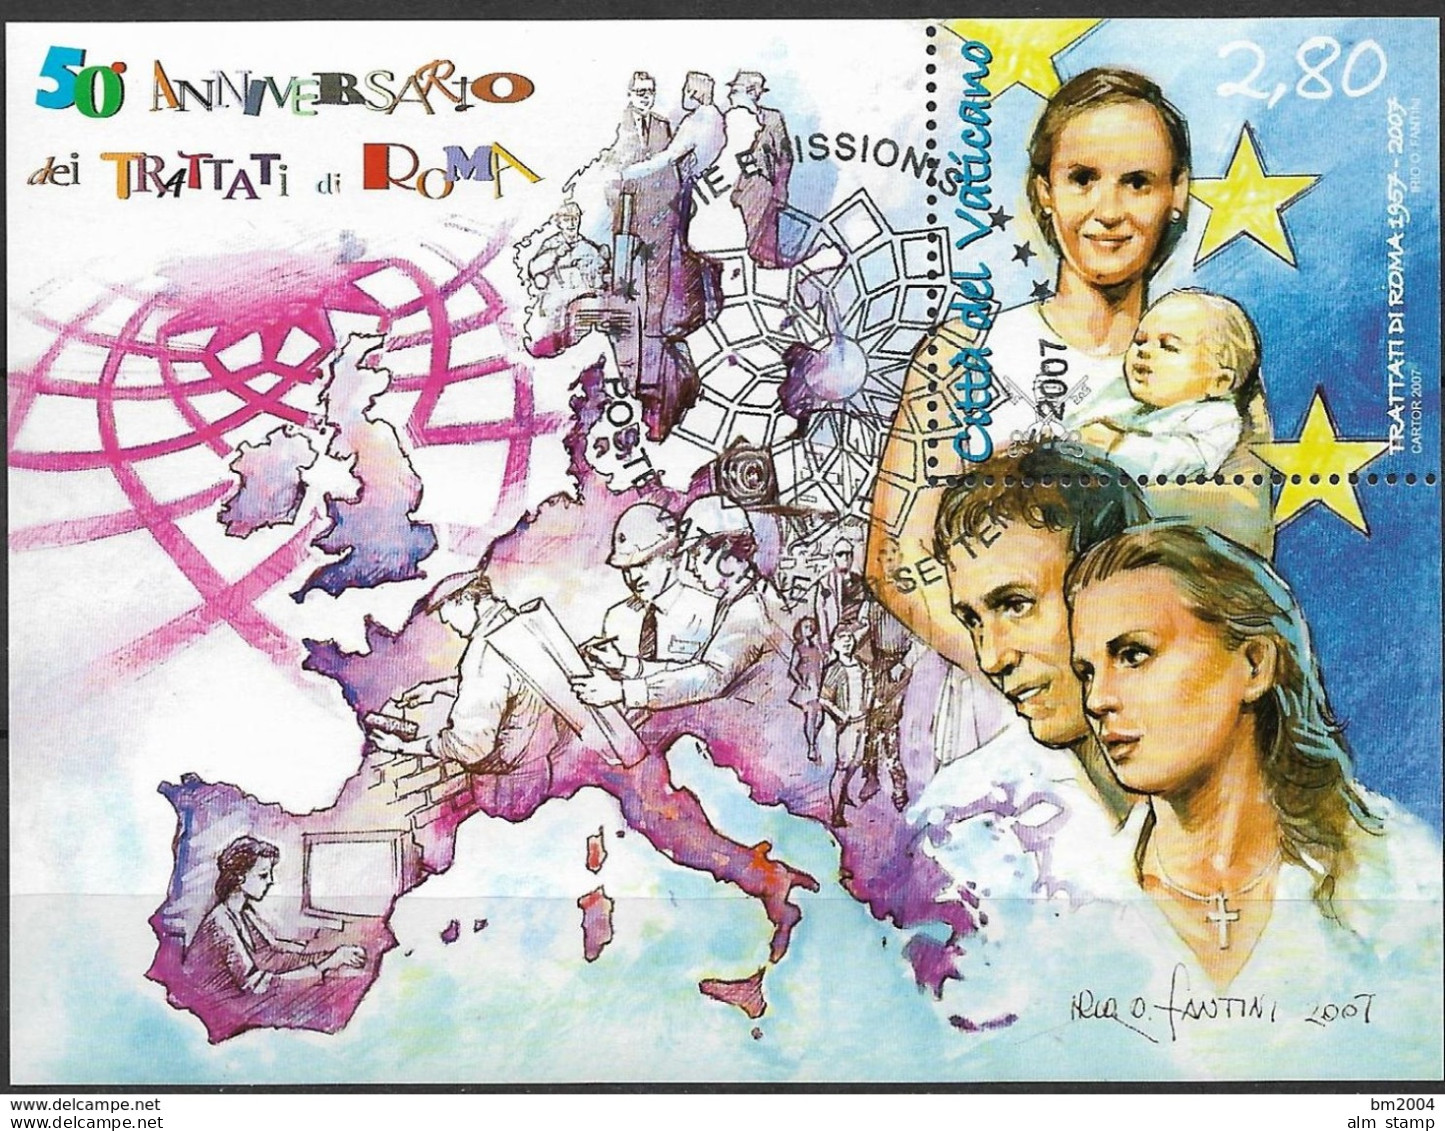 2007 Vatikan  Mi. Bl. 30 FD-used 50e Anniversario Dei   Trattati Die Roma - Gebraucht